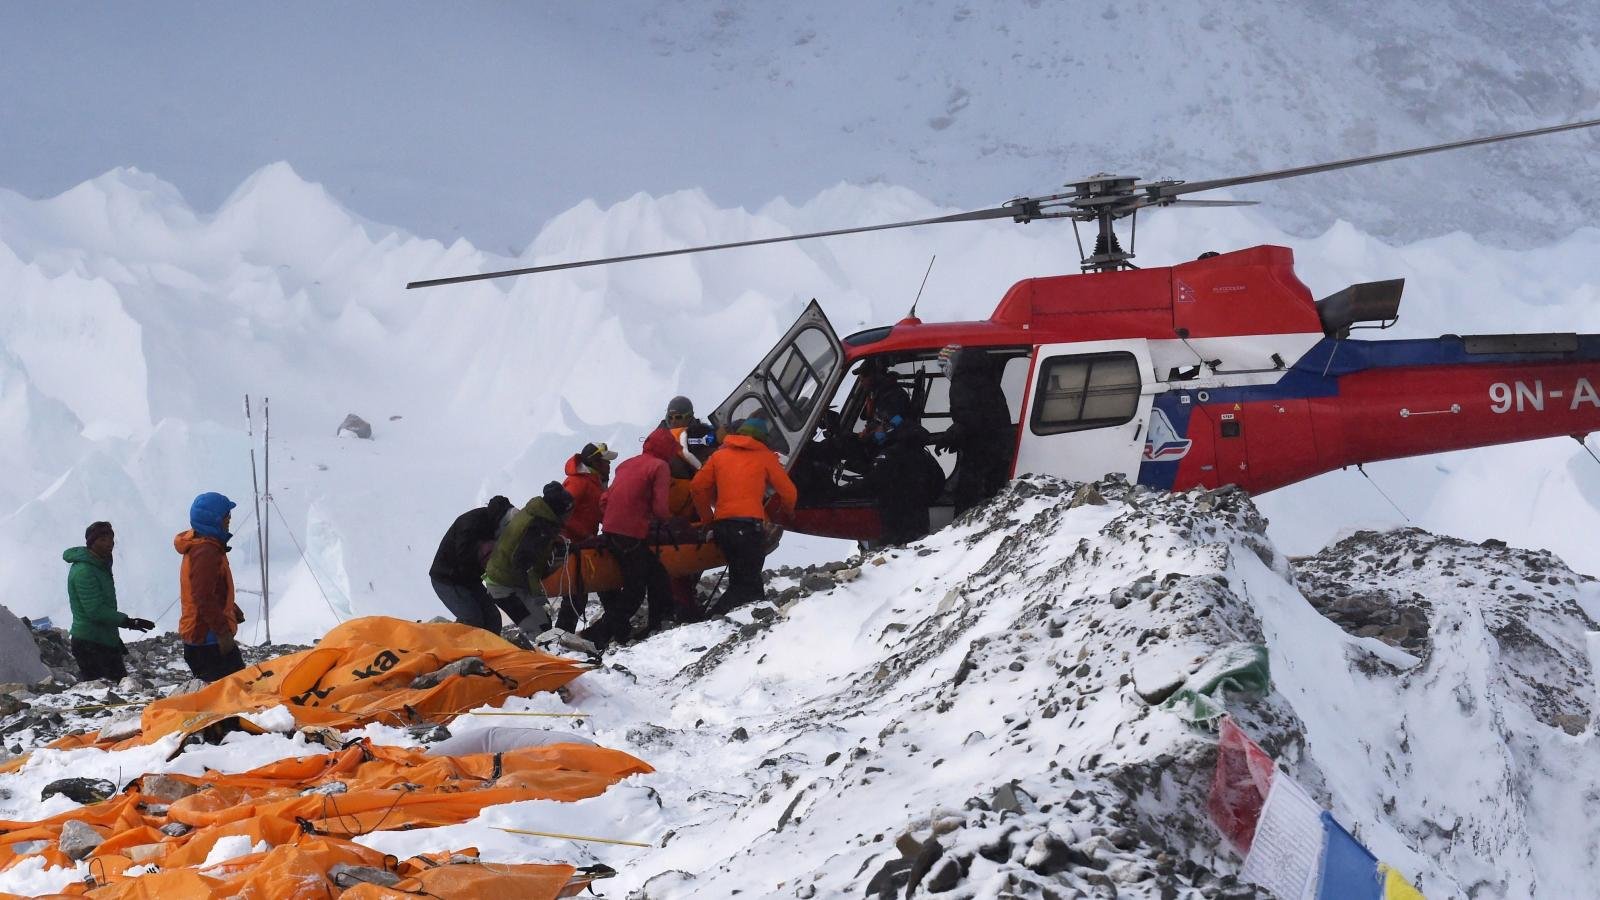  COVID a ajuns și pe Everest. Alpiniști bolnavi, recuperați cu elicopterul